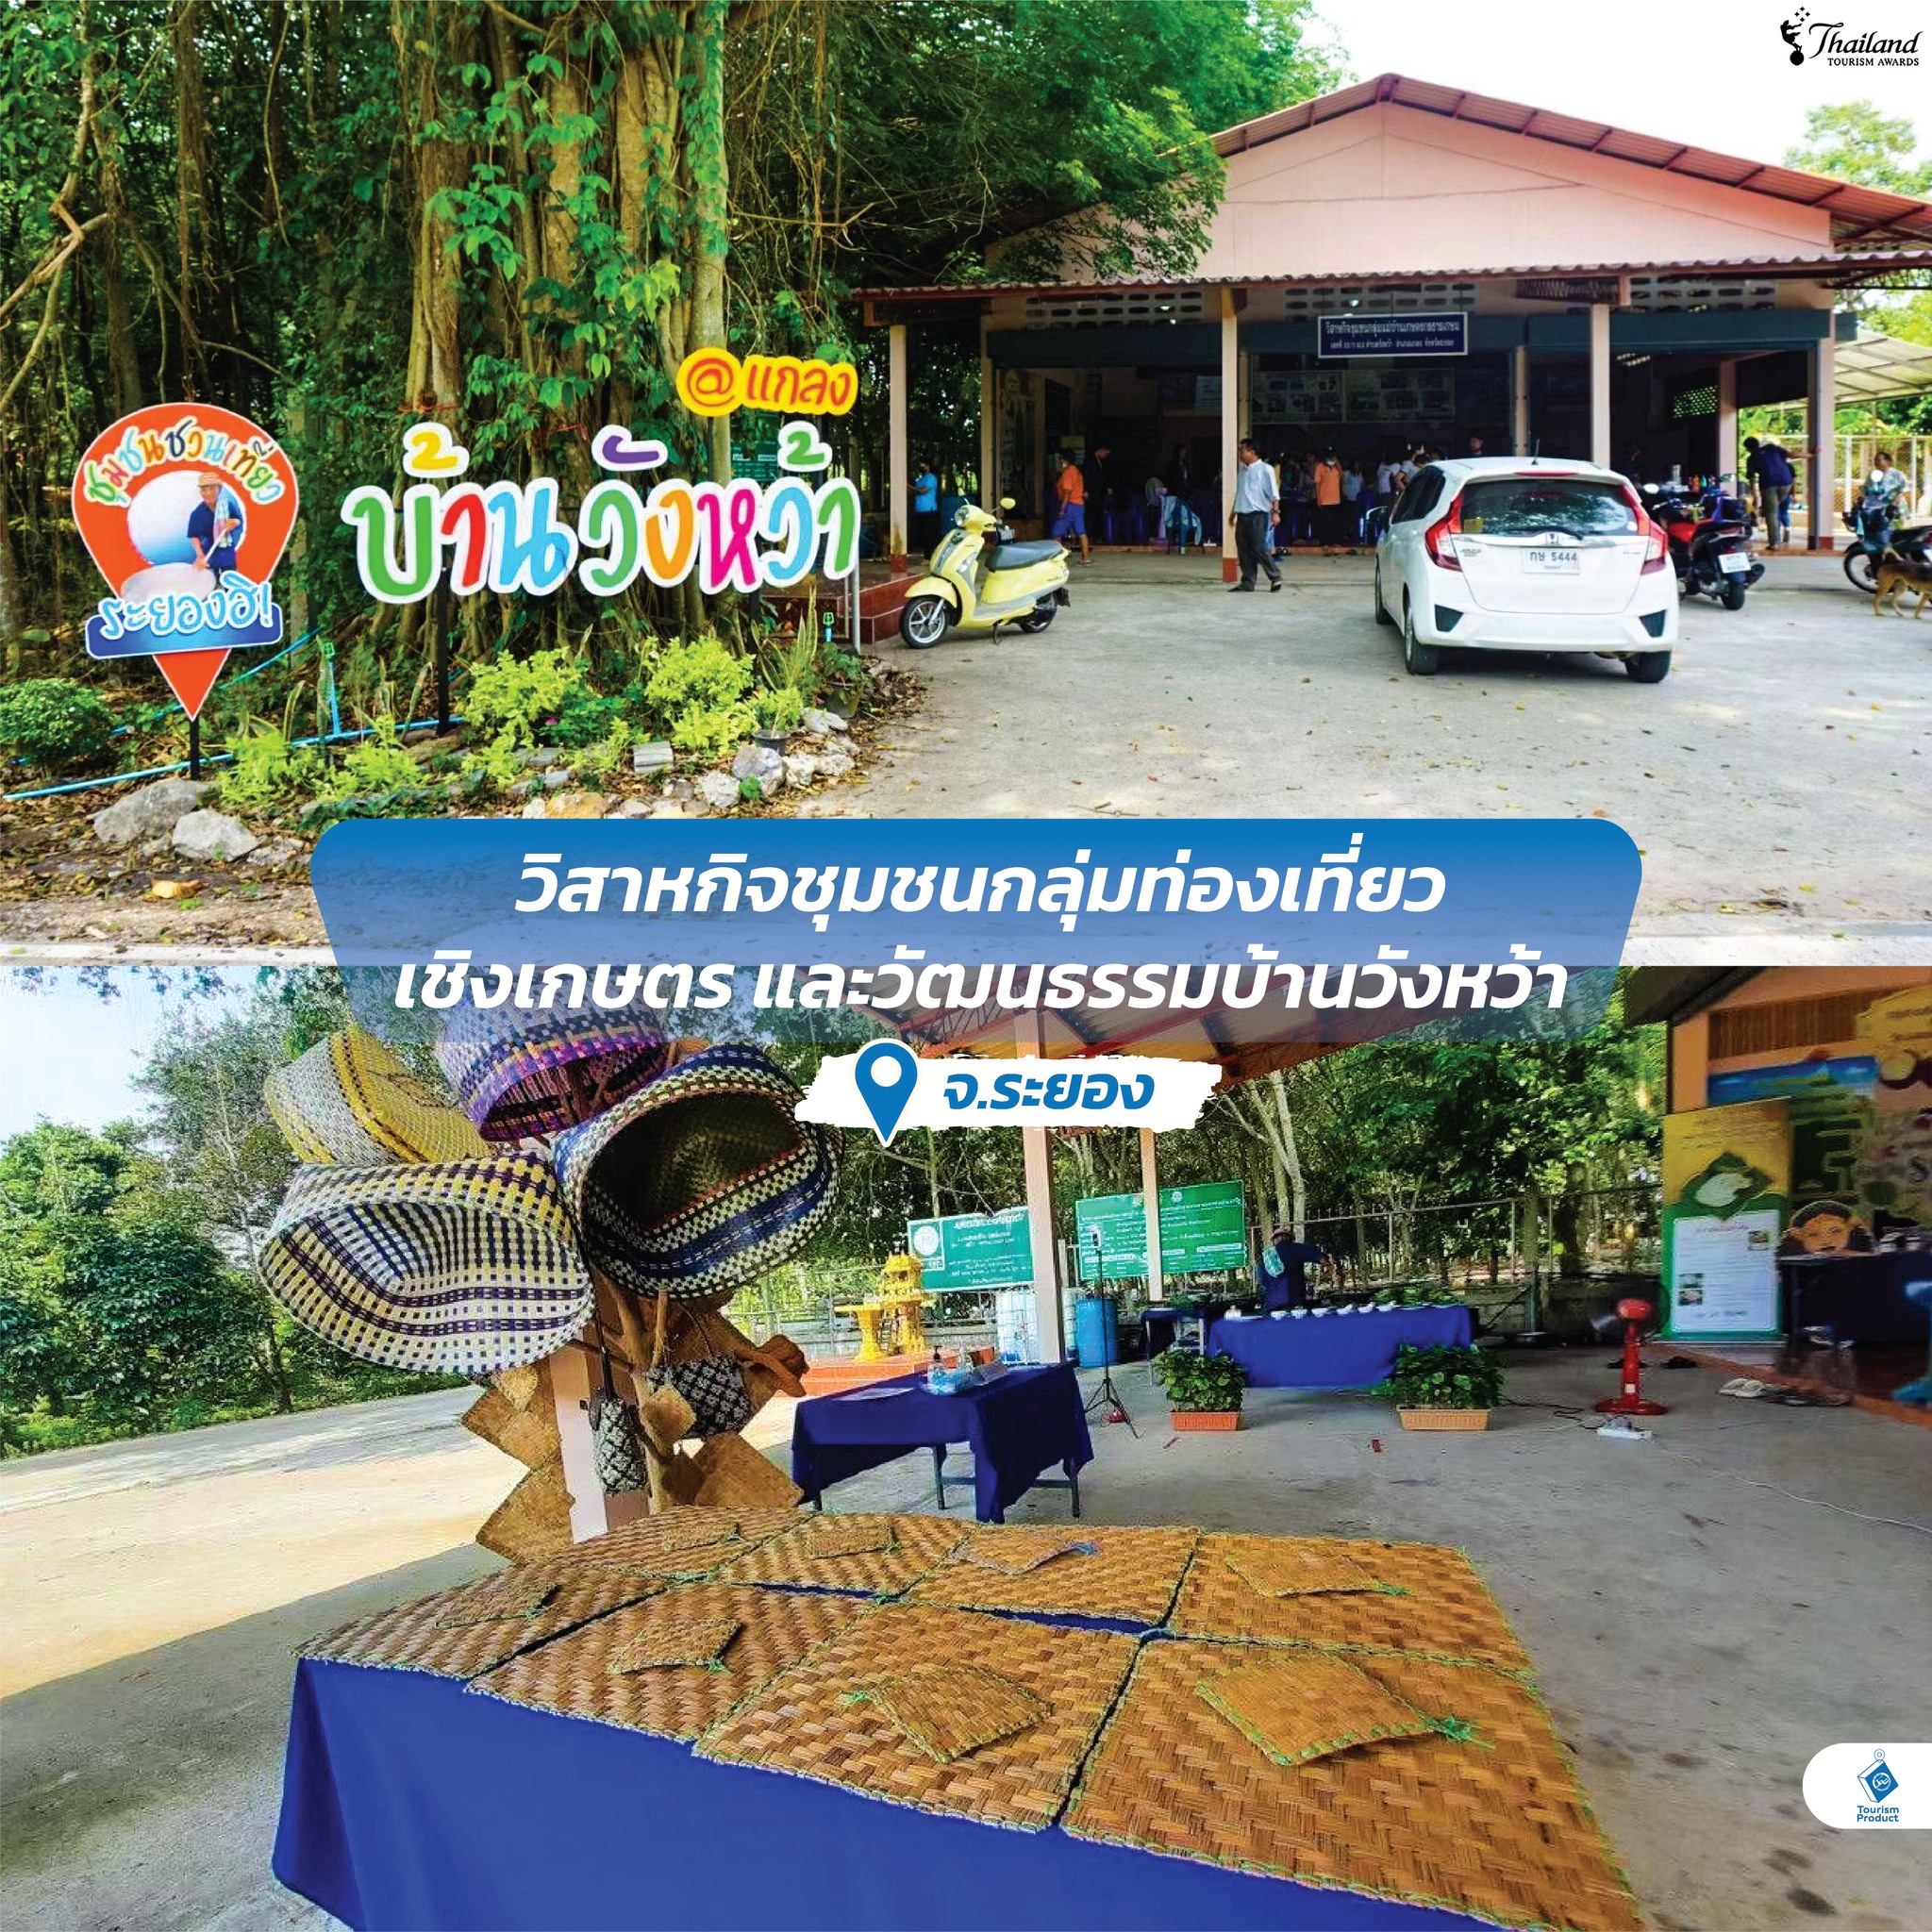 2 วัน 1 คืน กิน เที่ยว สไตล์ Thailand Tourism Awards (TTA) @ ระยอง - ตราด สาหกิจชุมชนกลุ่มท่องเที่ยวเชิงเกษตร เเละวัฒนธรรมบ้านวังหว้า จ.ระยอง